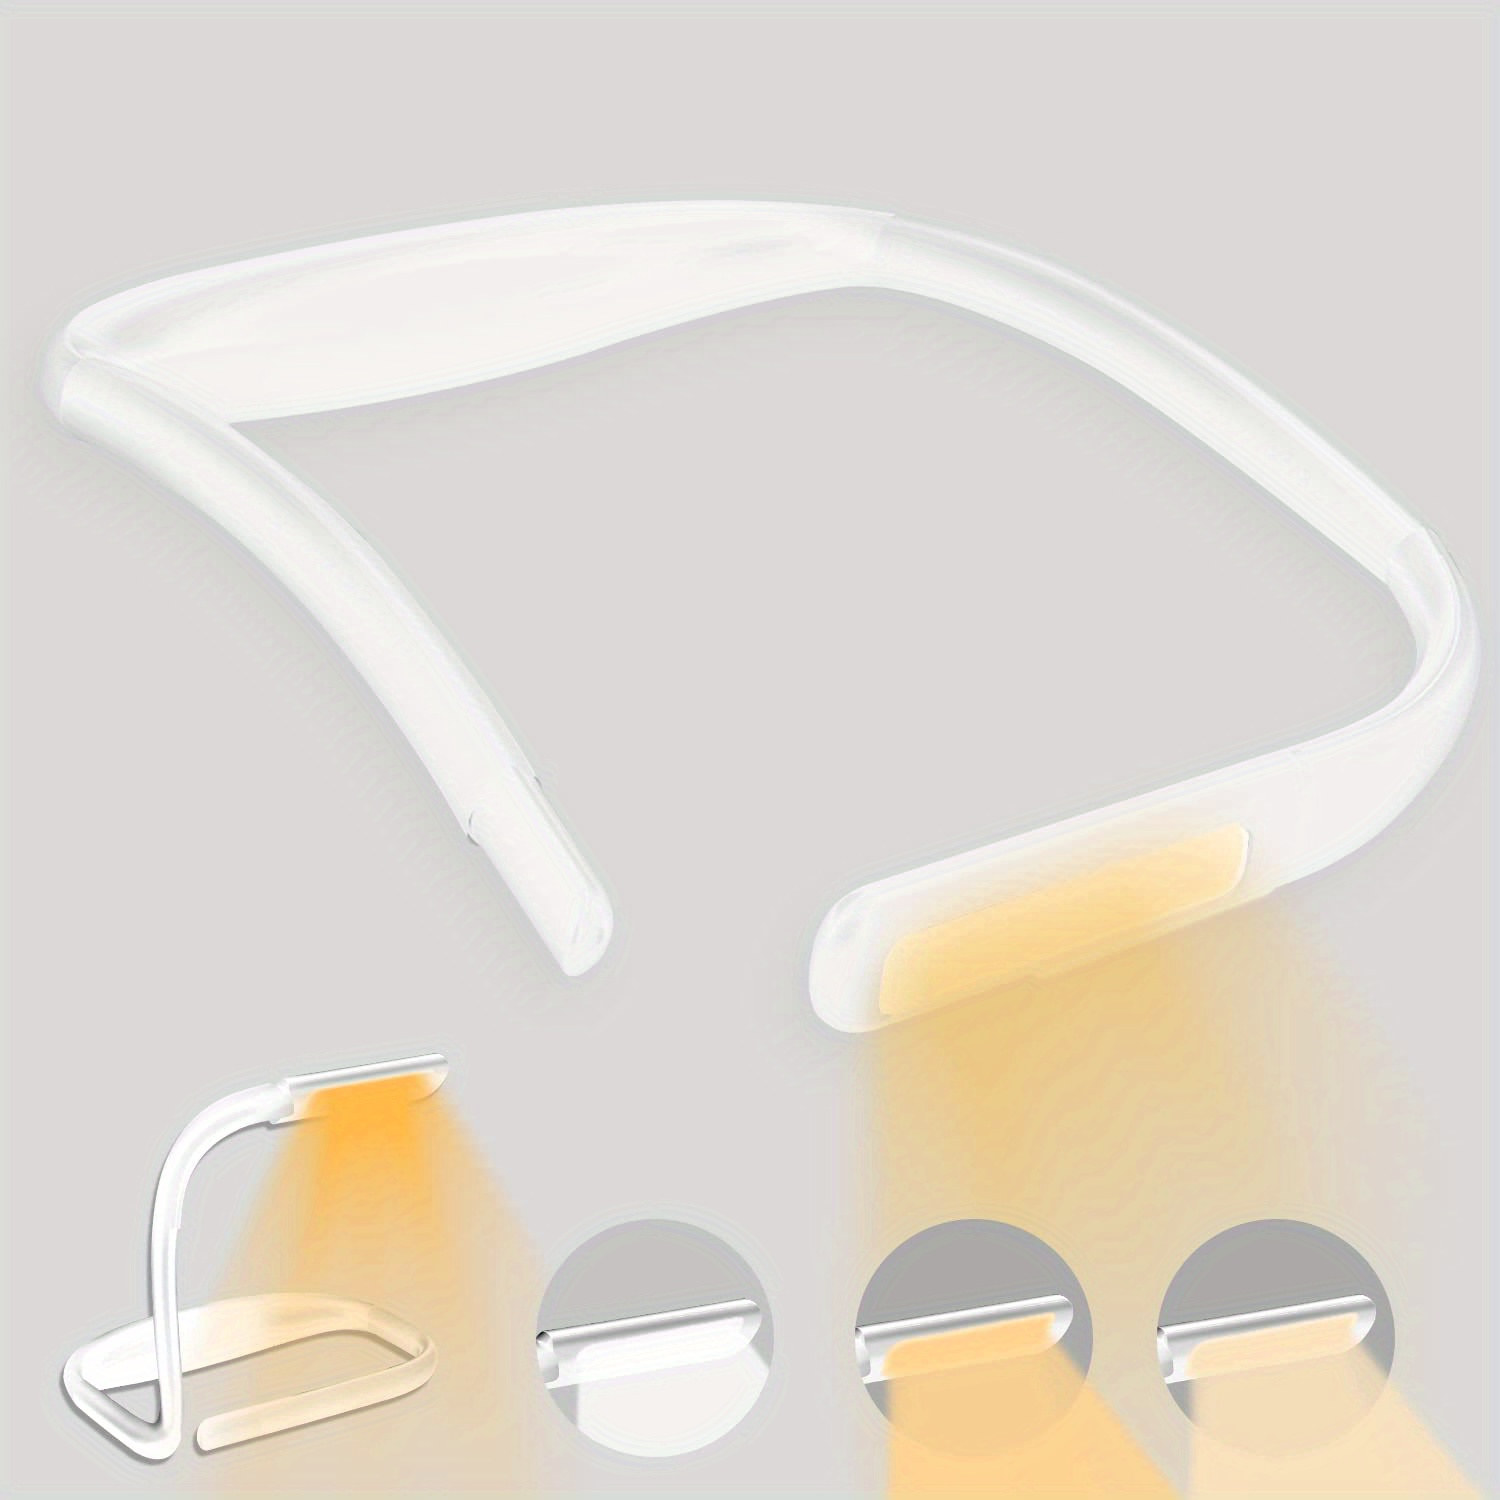  LEDGLE Luz LED para el cuello para leer, linterna de cuello  recargable para tejer, 3 brillo ajustable, brazos flexibles de silicona  suave, para leer, tejer, ganchillo, campamento, reparación : Herramientas y